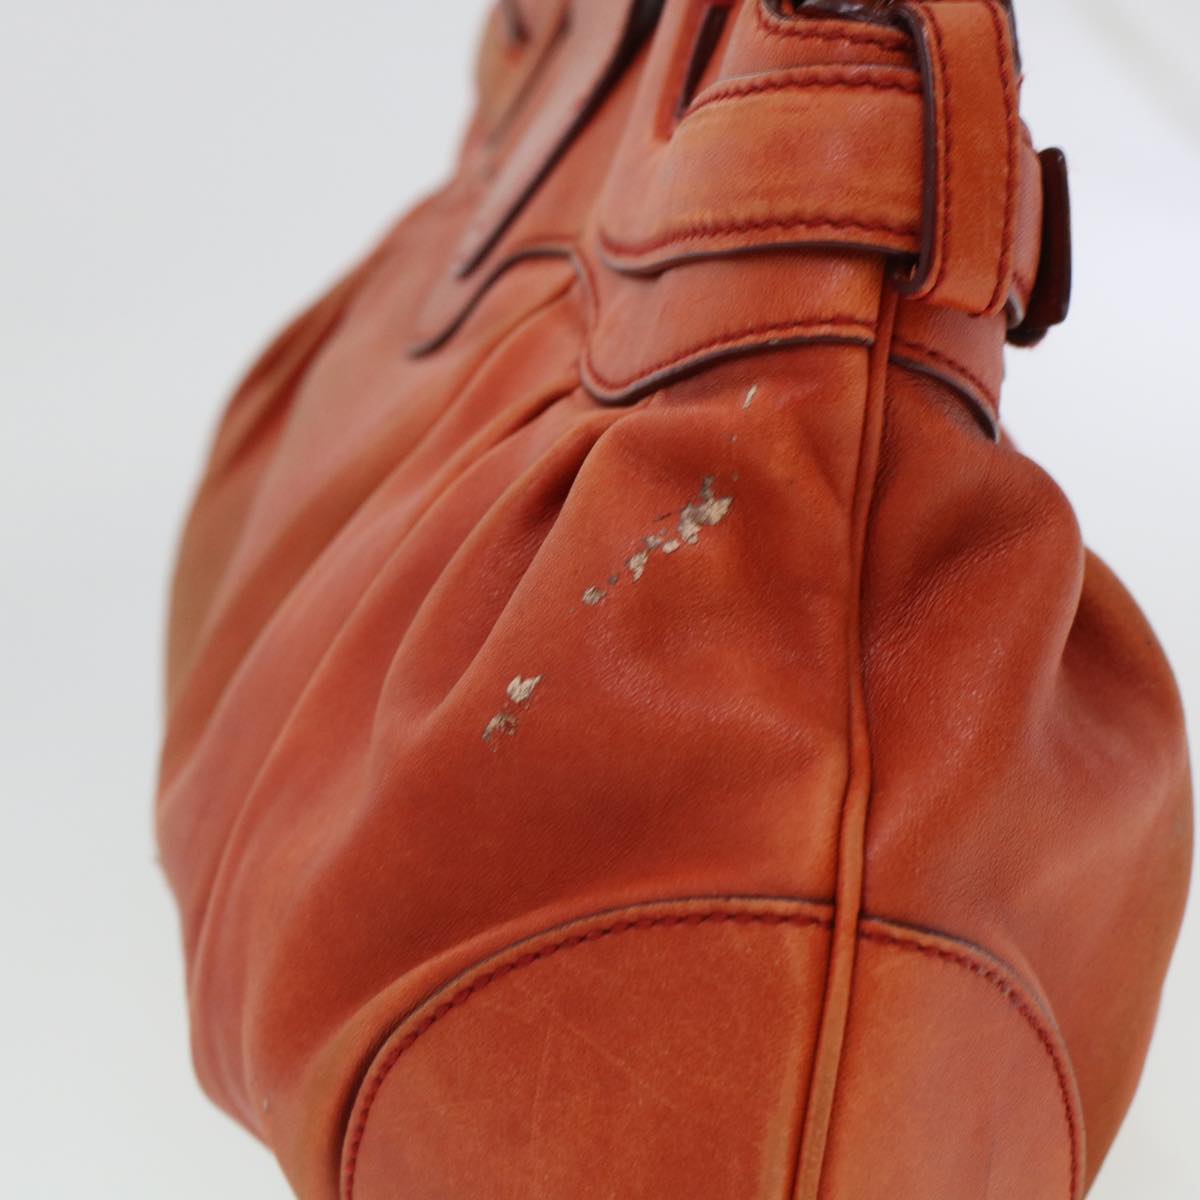 Salvatore Ferragamo Gancini Hand Bag Leather Orange AB-21 5370 Auth 44570